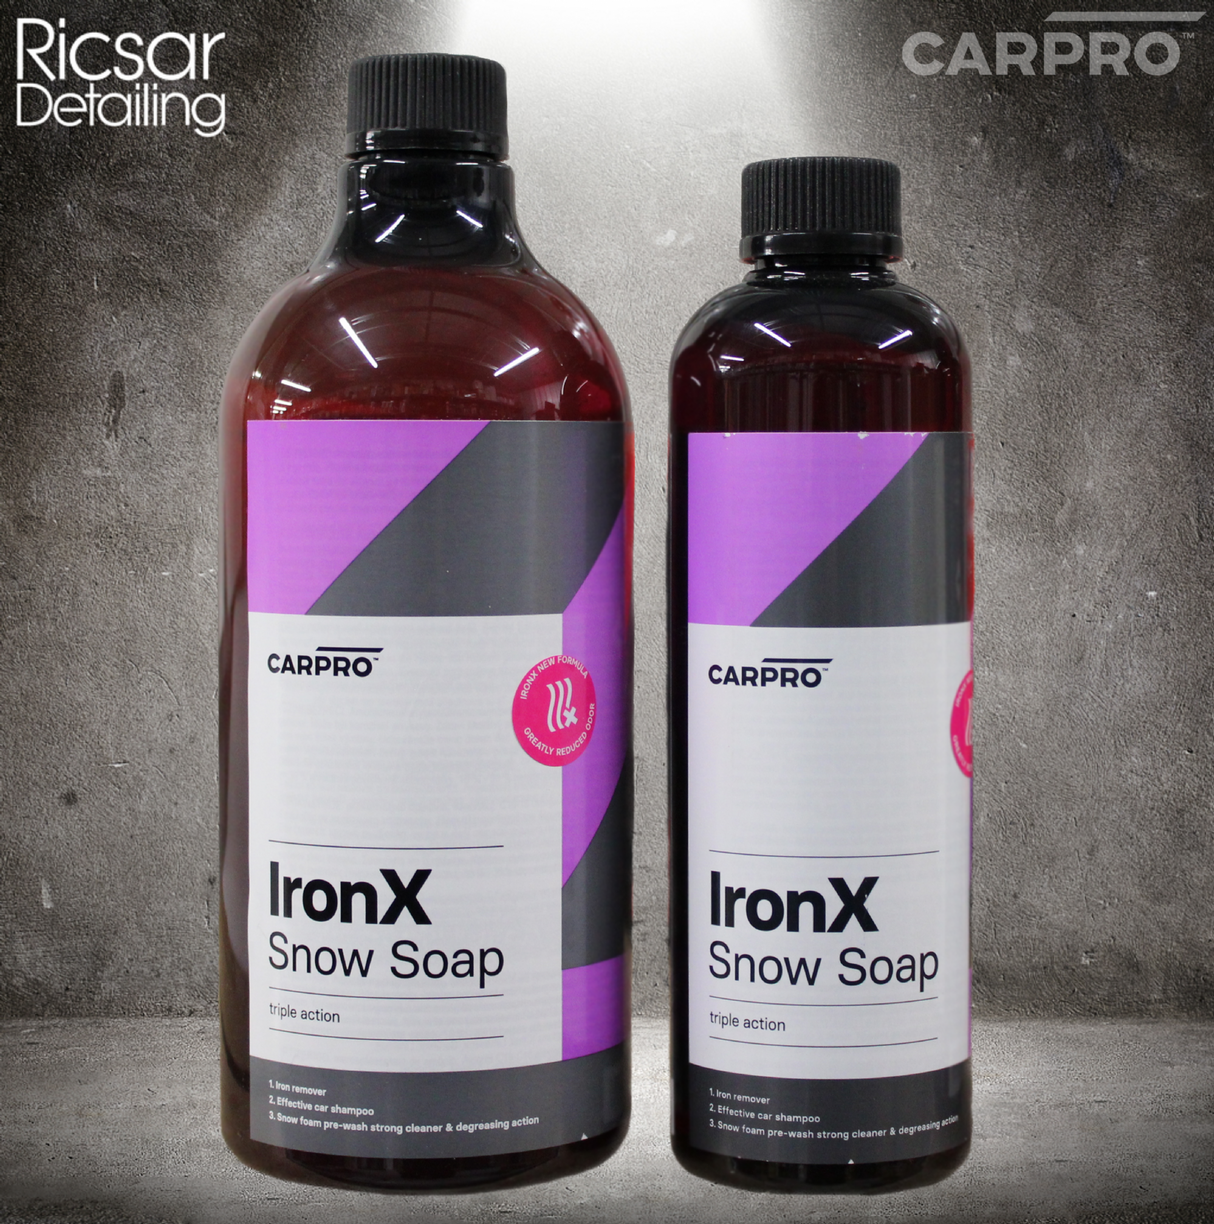 CarPro Iron X Snow Soap